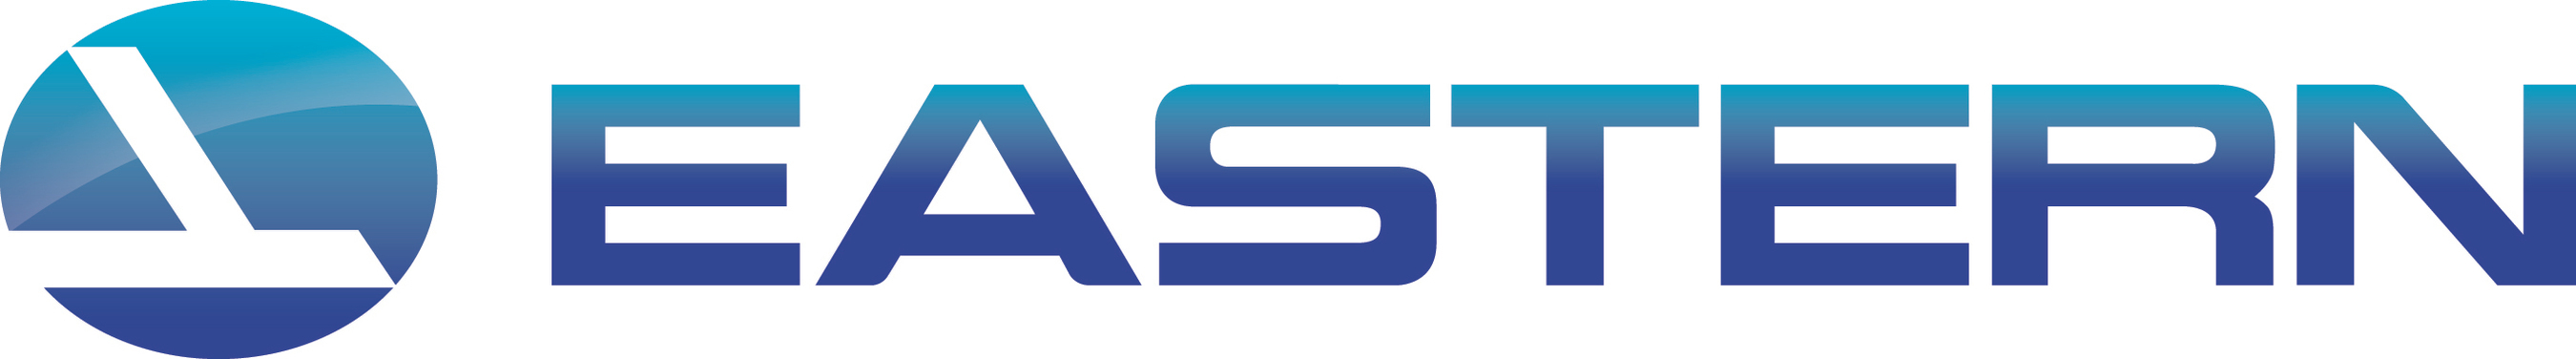 Resultado de imagen para Eastern Air Lines old logo